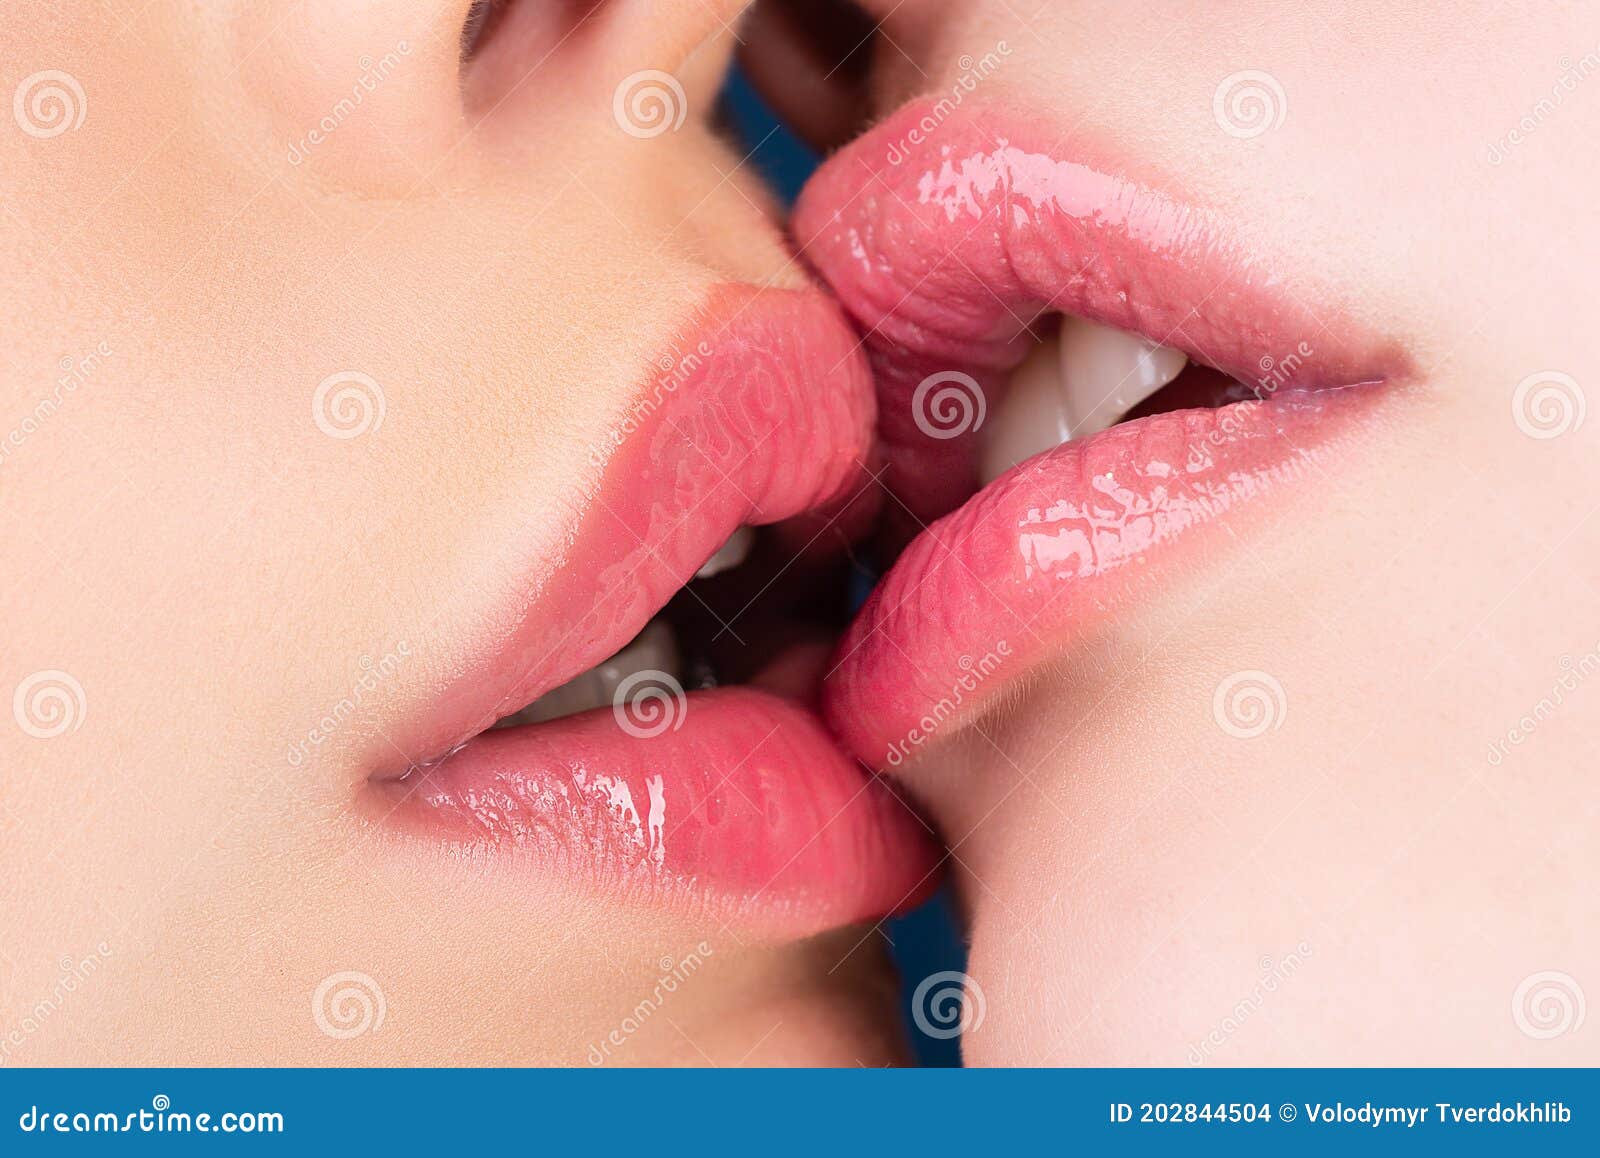 Tipos de beso en la boca